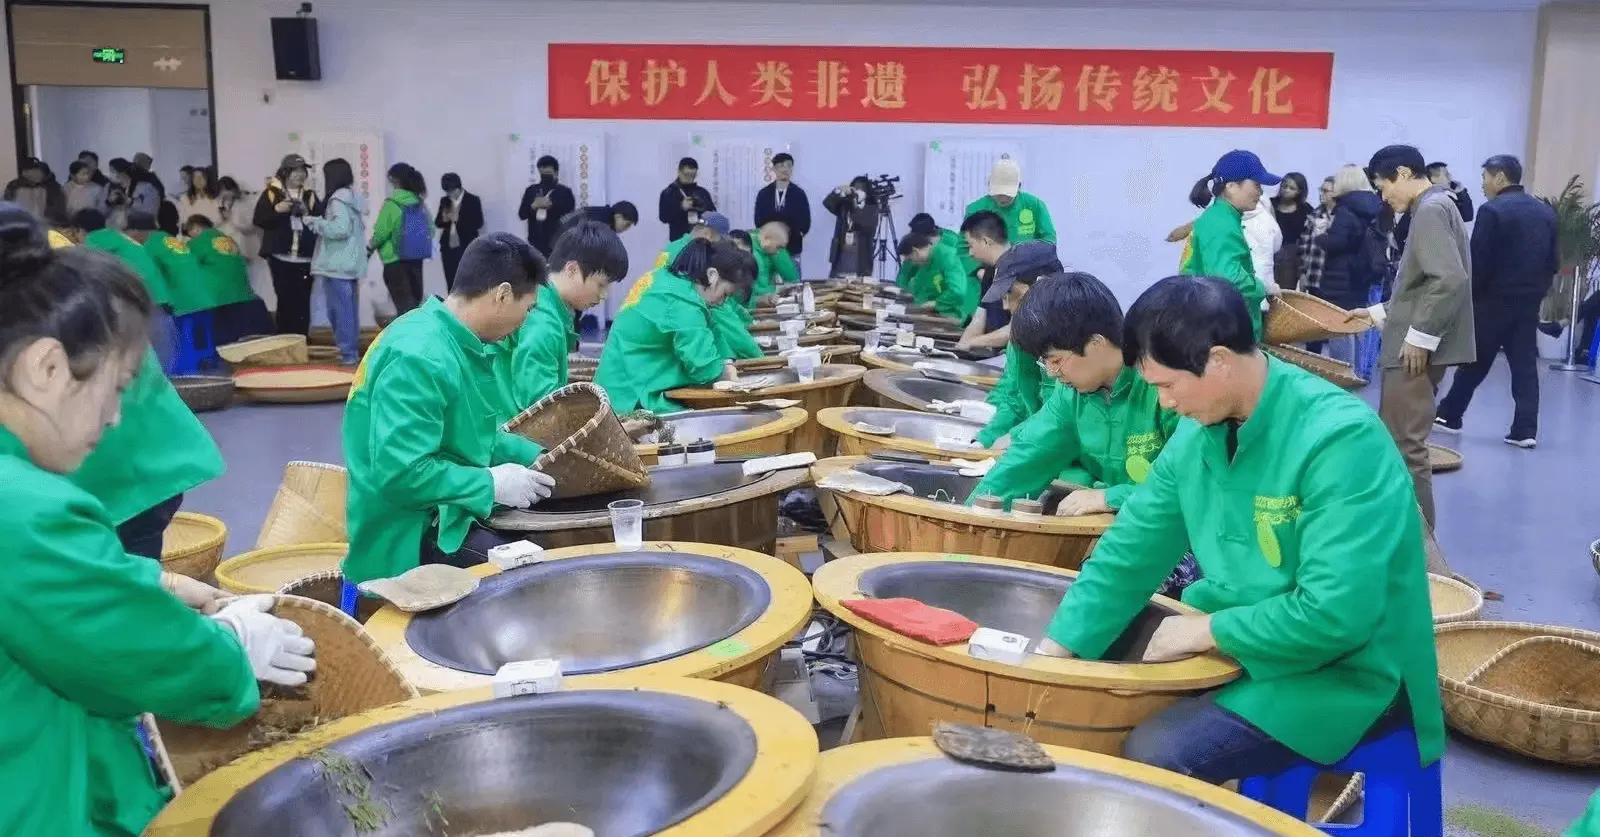 people performing hand-fried Longjing tea